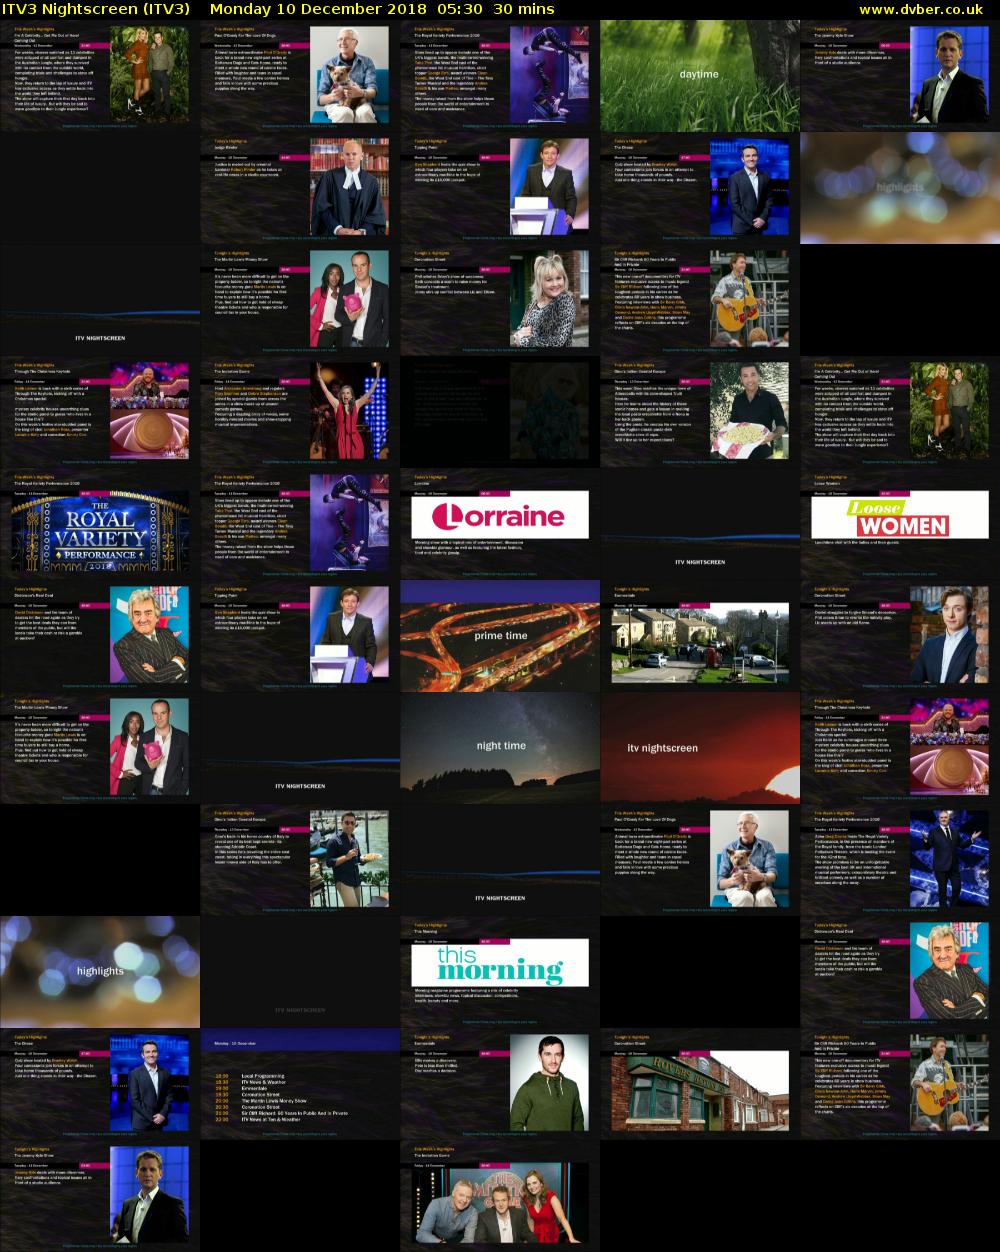 ITV3 Nightscreen (ITV3) Monday 10 December 2018 05:30 - 06:00